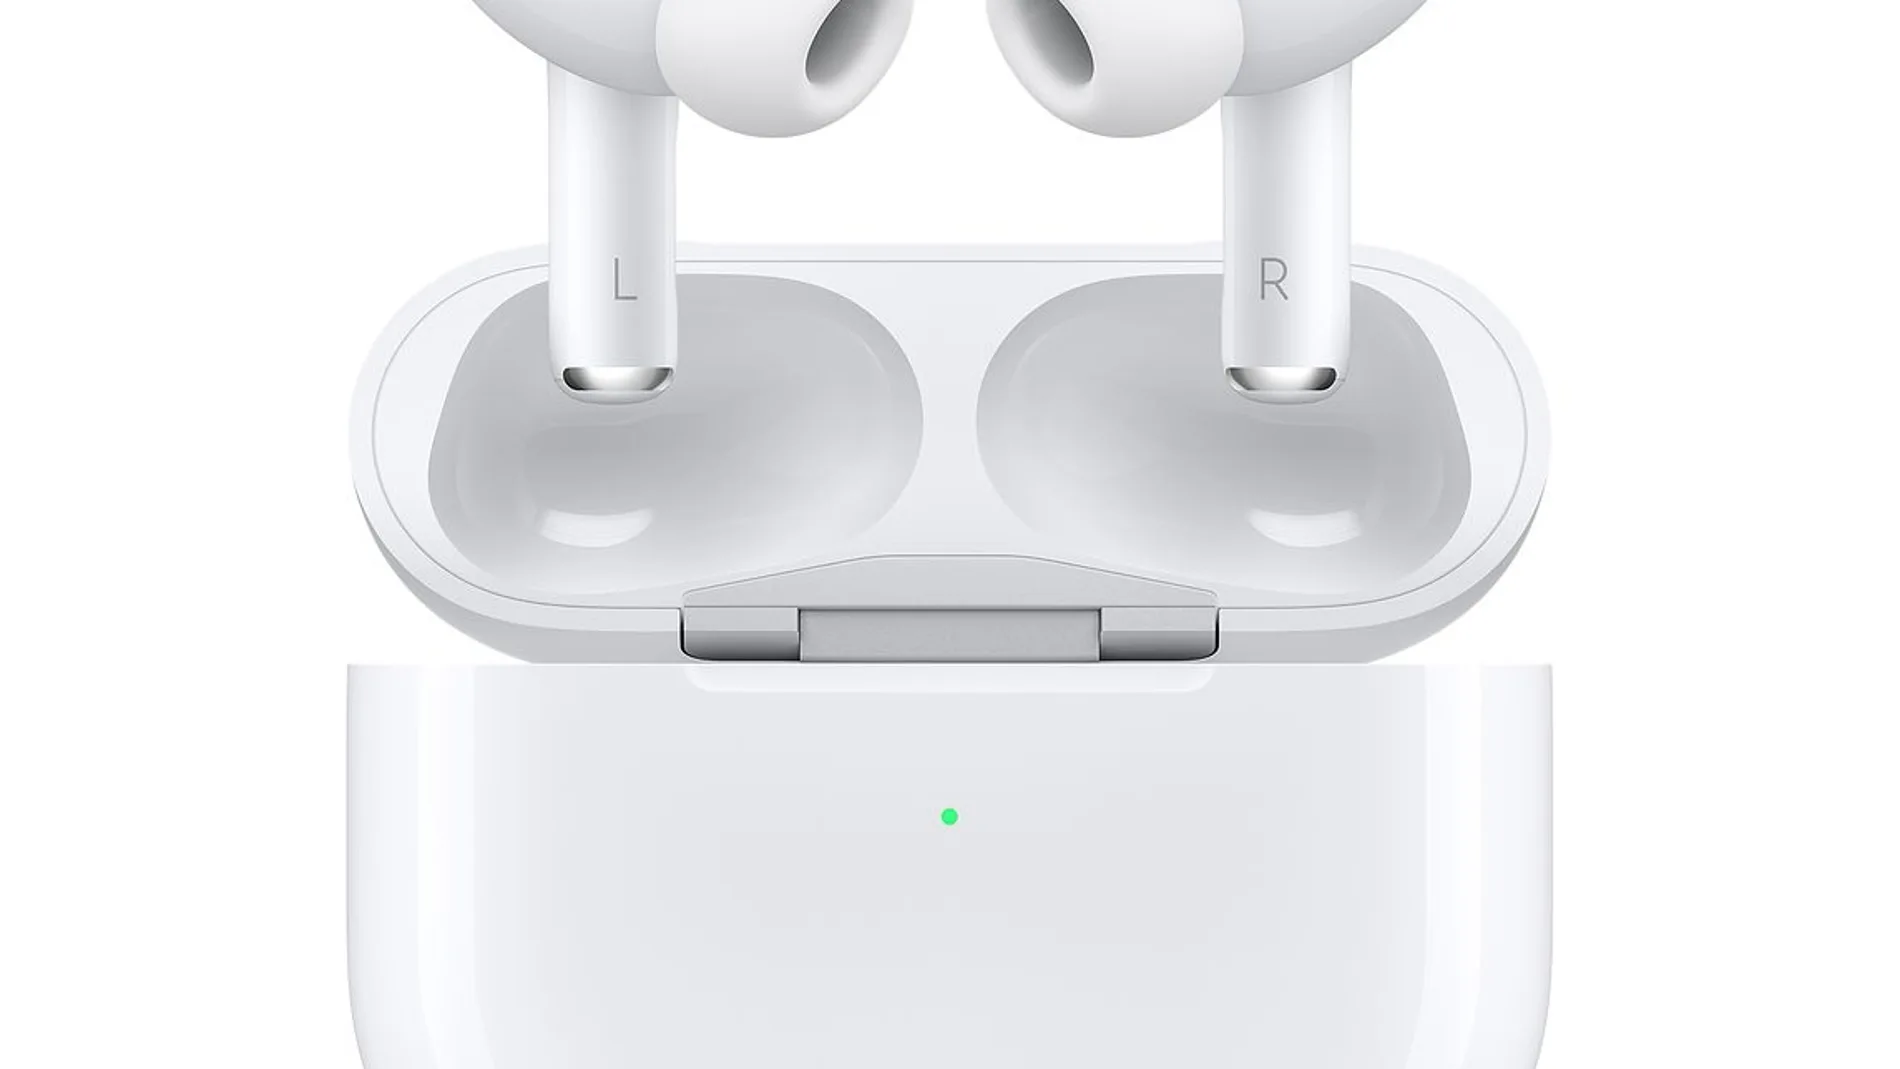 Aipods en oferta, rebajas en Apple auriculares inalámbricos